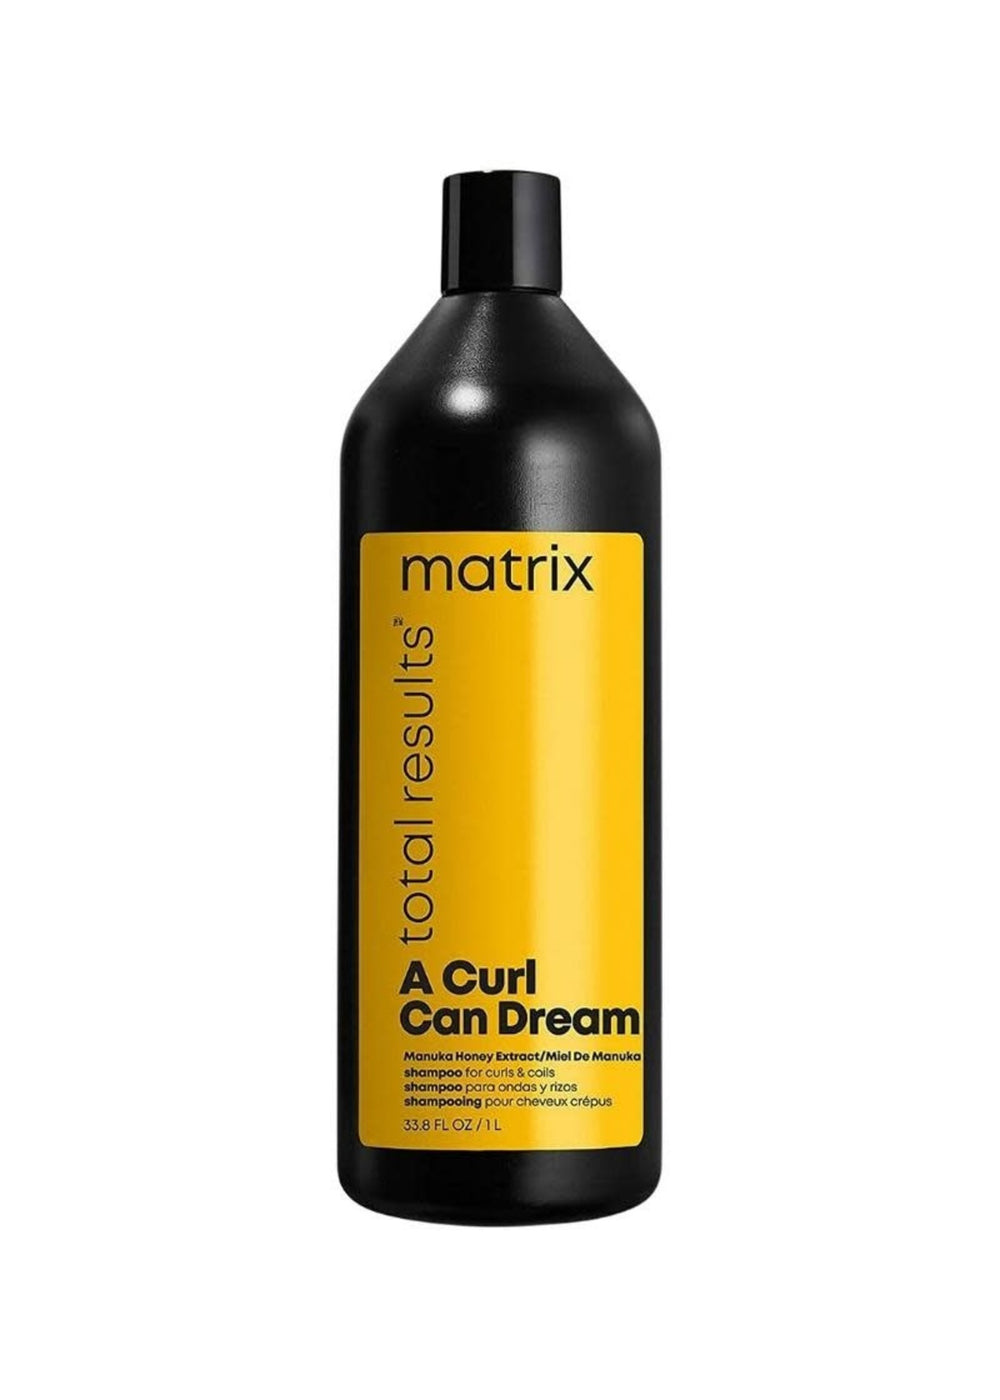 Matrix A curl can dream shampoo 1L